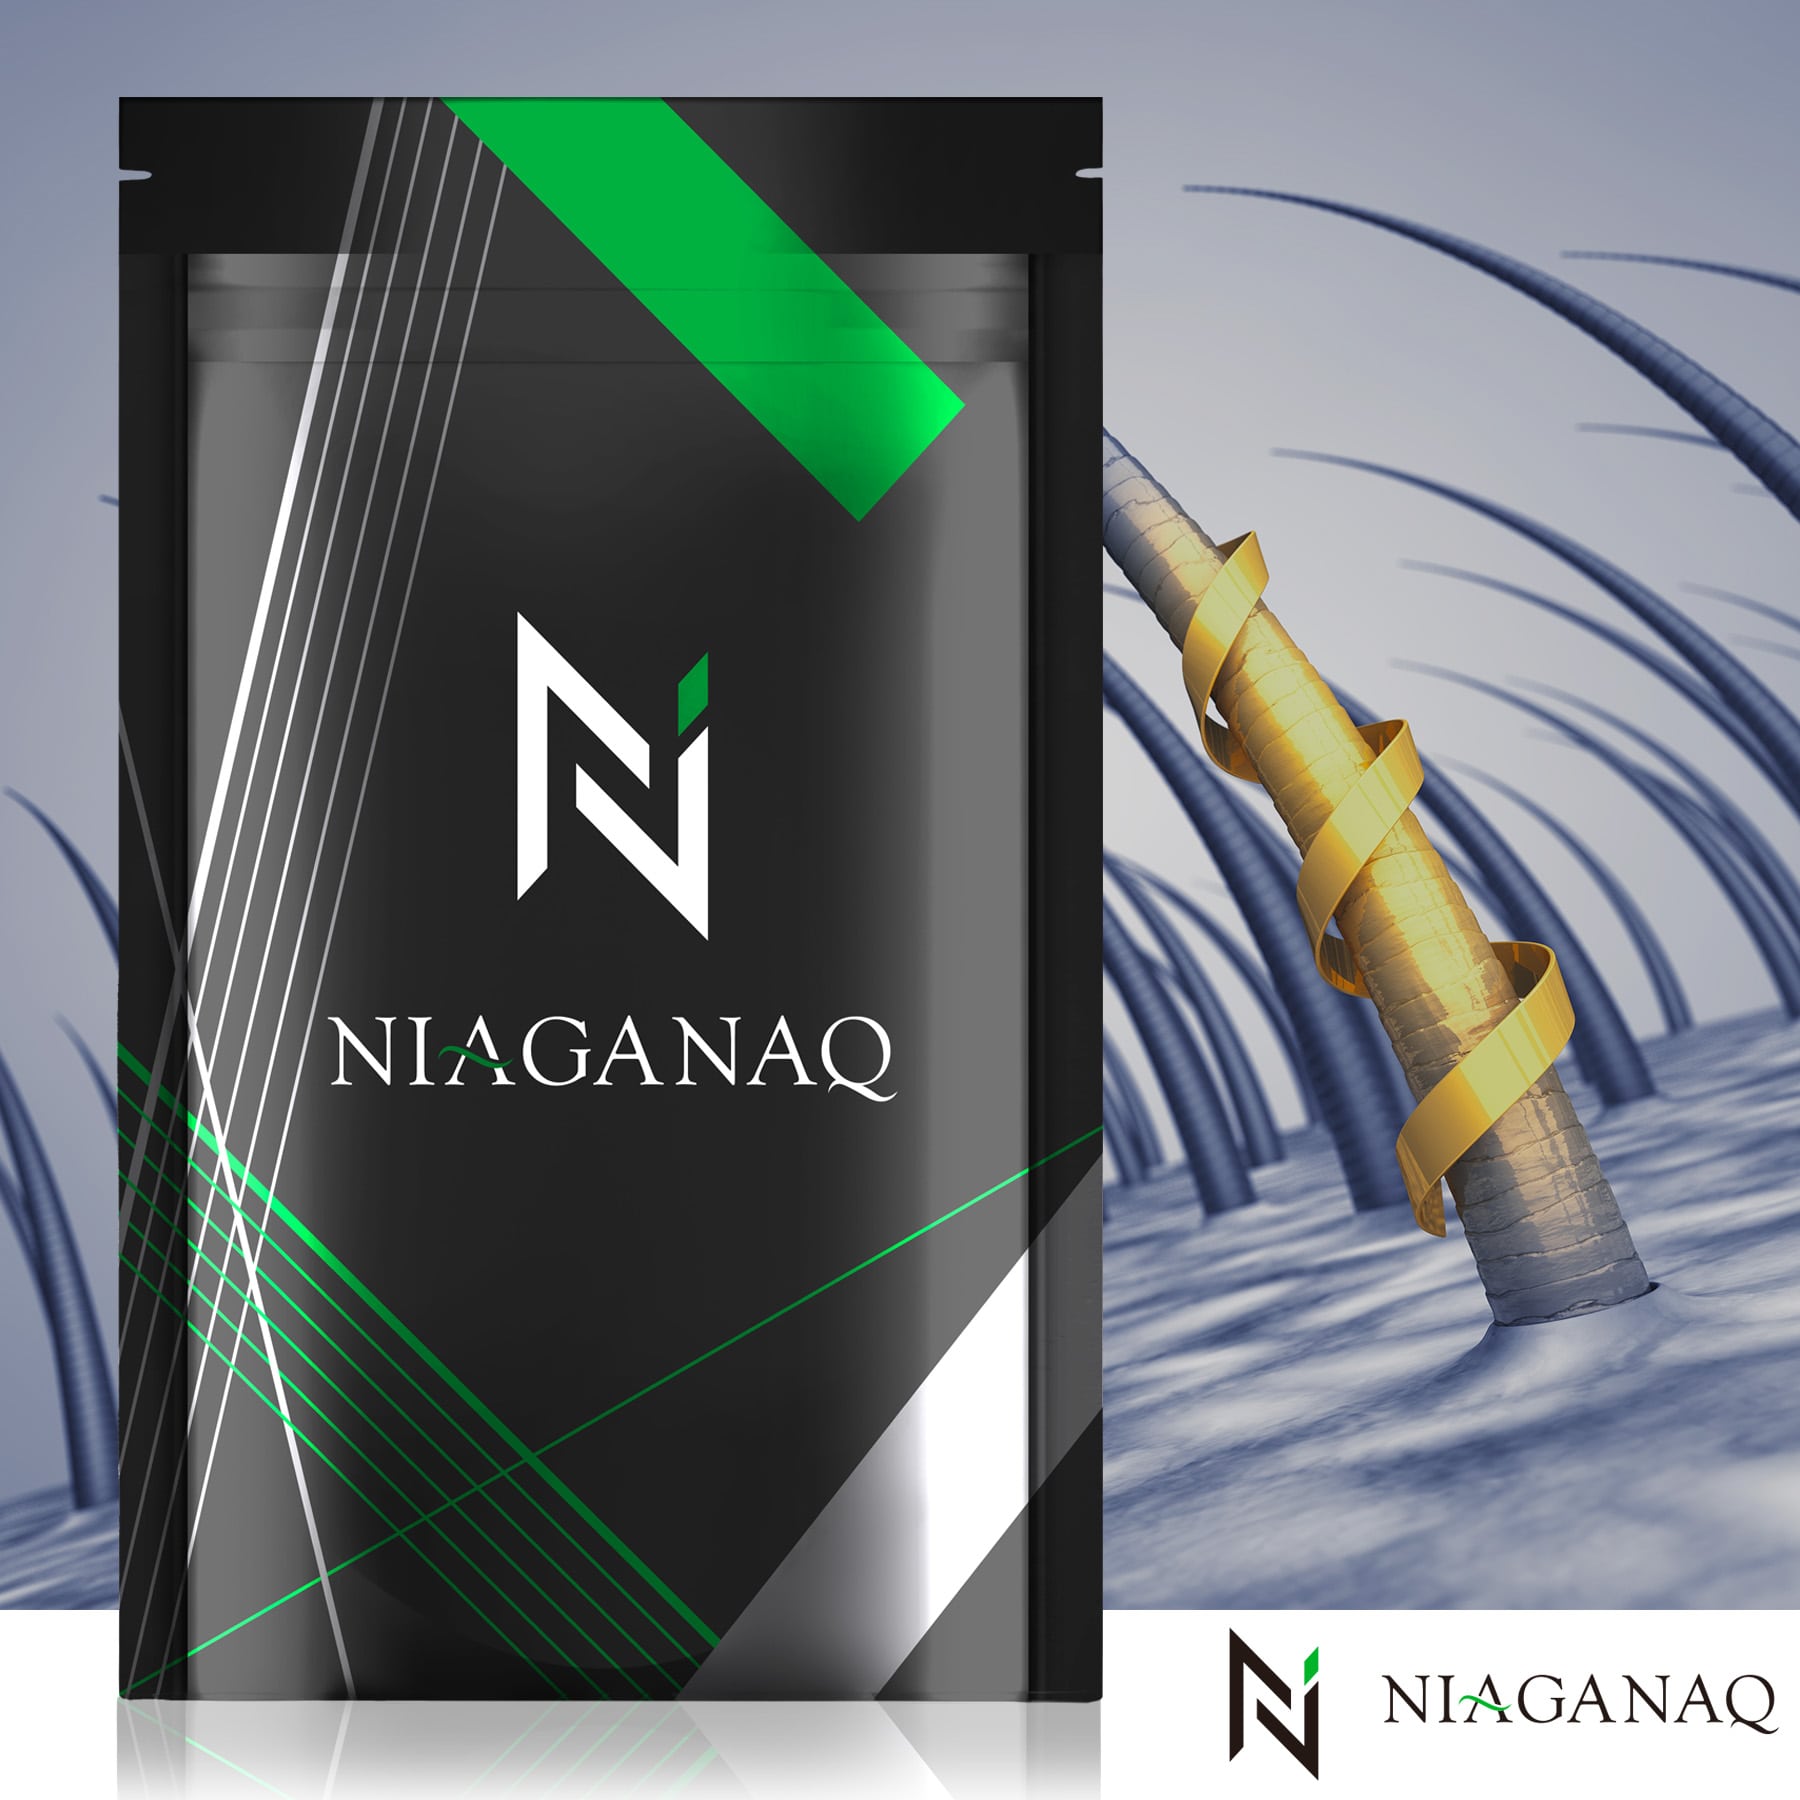 【2個セット】NIAGANAQ アナゲイン3300mg ノコギリヤシ 亜鉛 イソフラボン 厳選12成分 GMP認定工場 30日分 2個セット